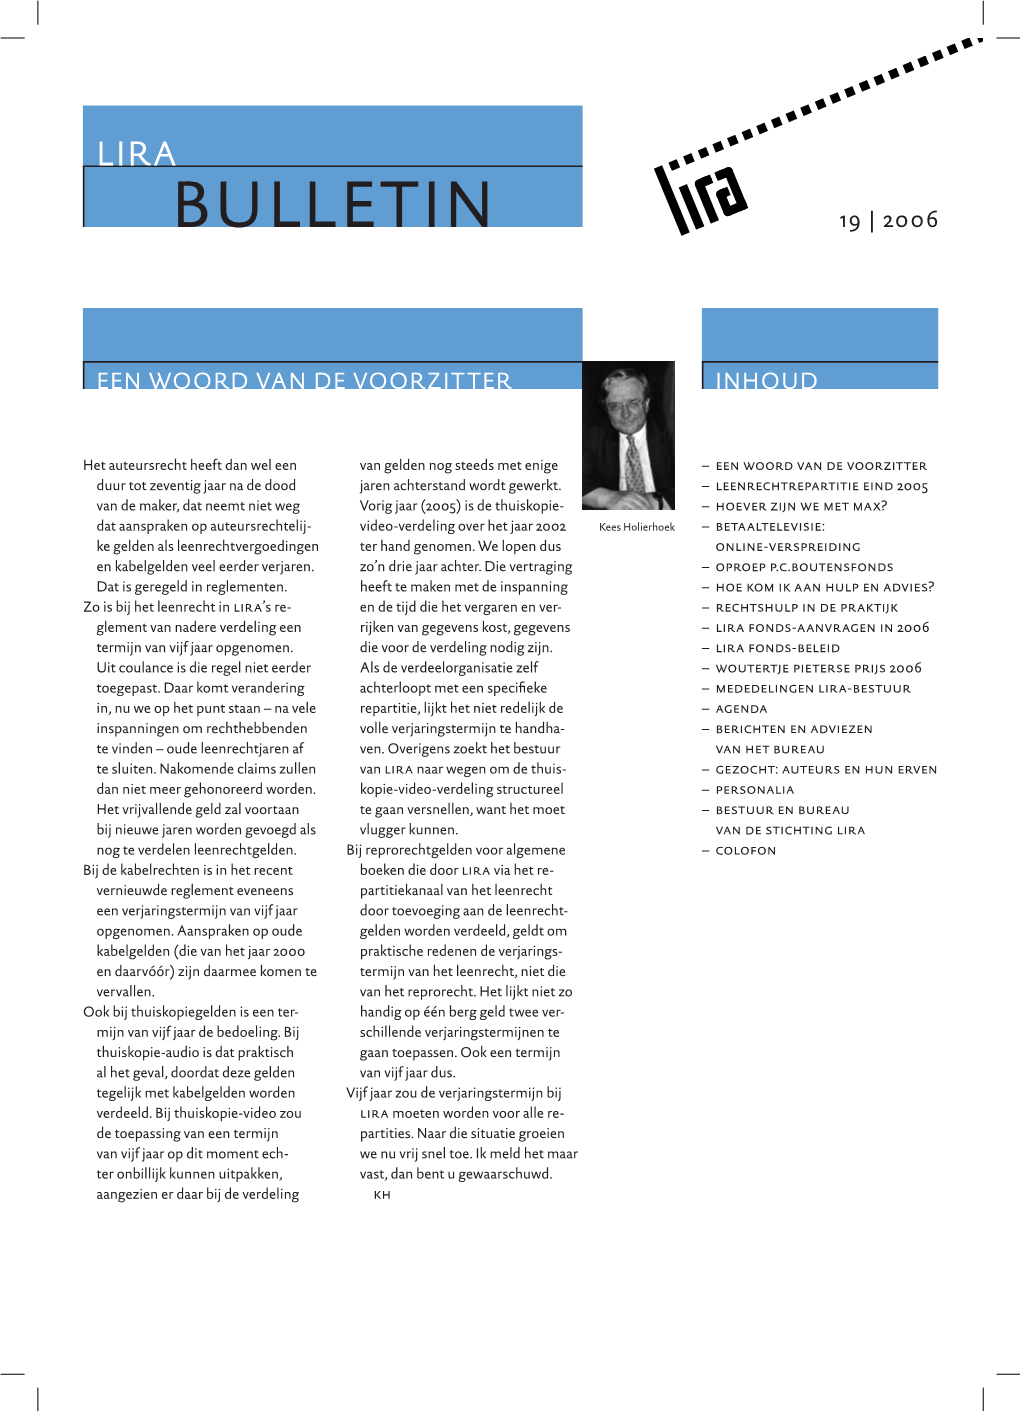 Bulletin 19 | 2006